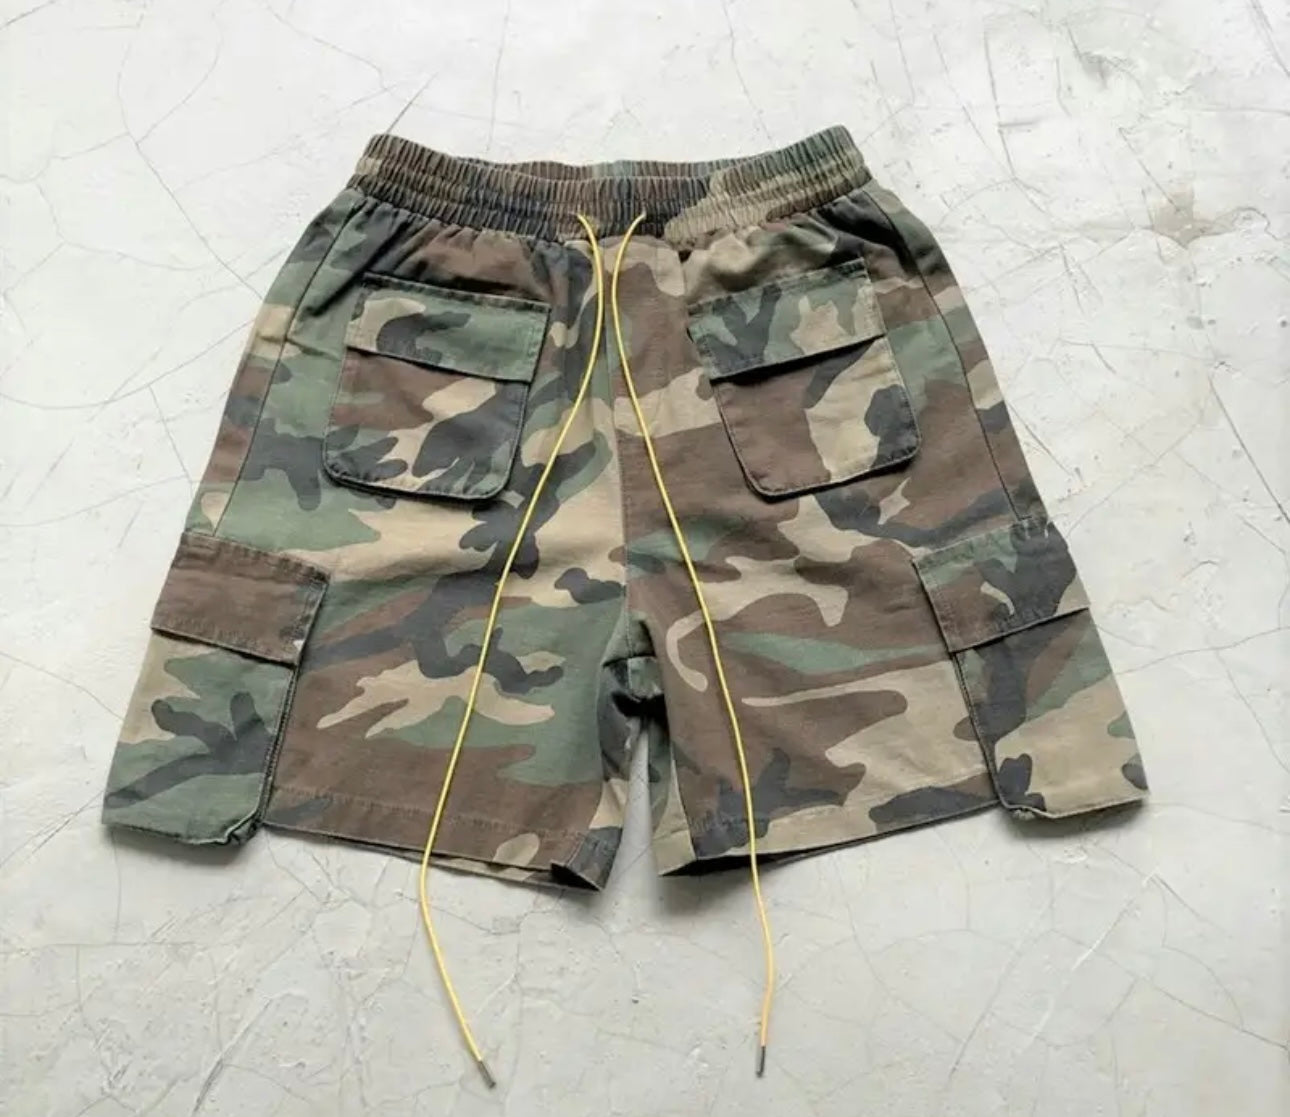 Camo Cargo shorts